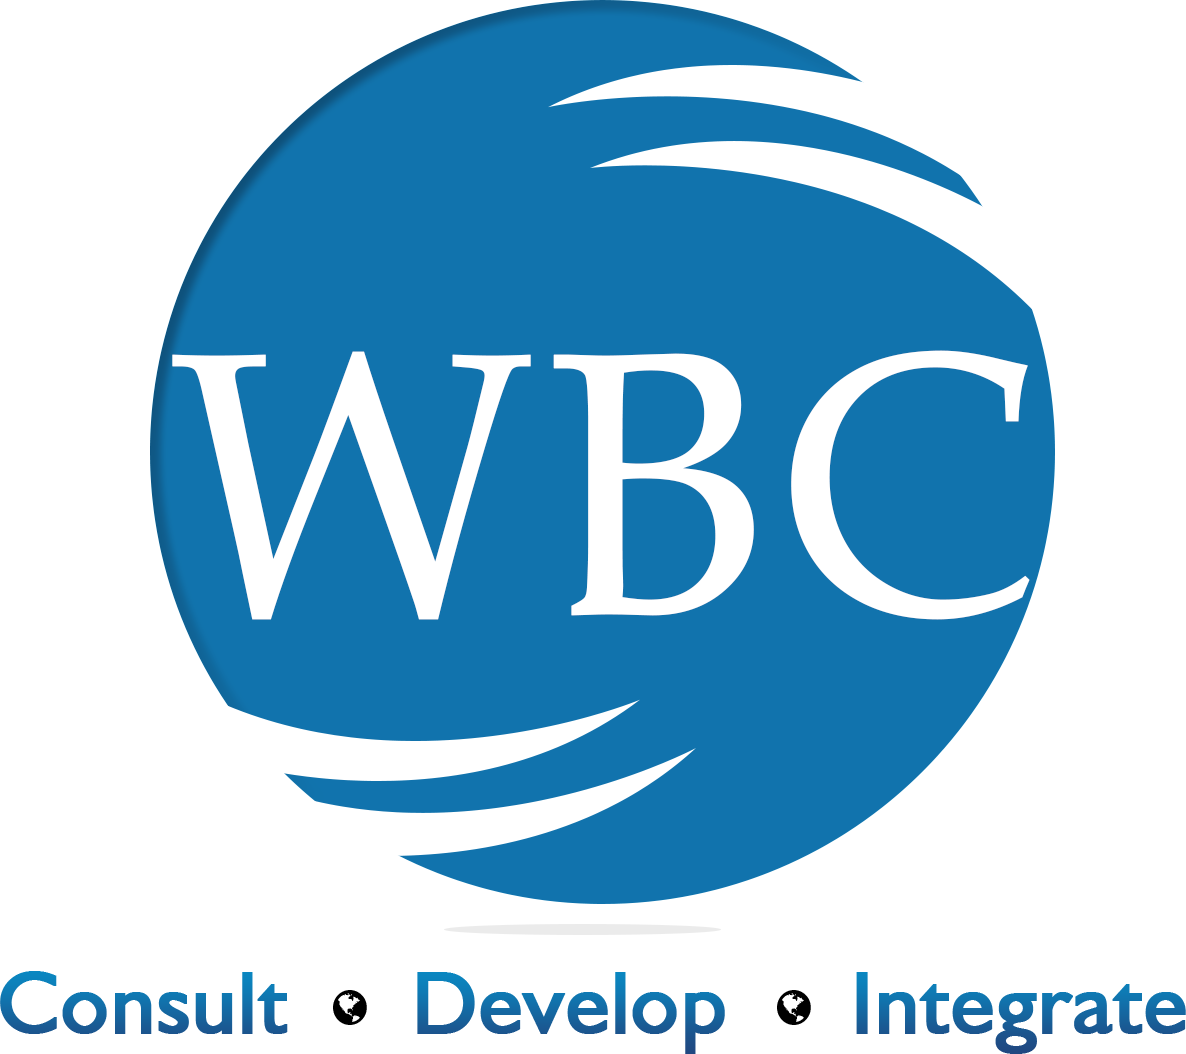 WBC Software Lab, Karaikudi, India